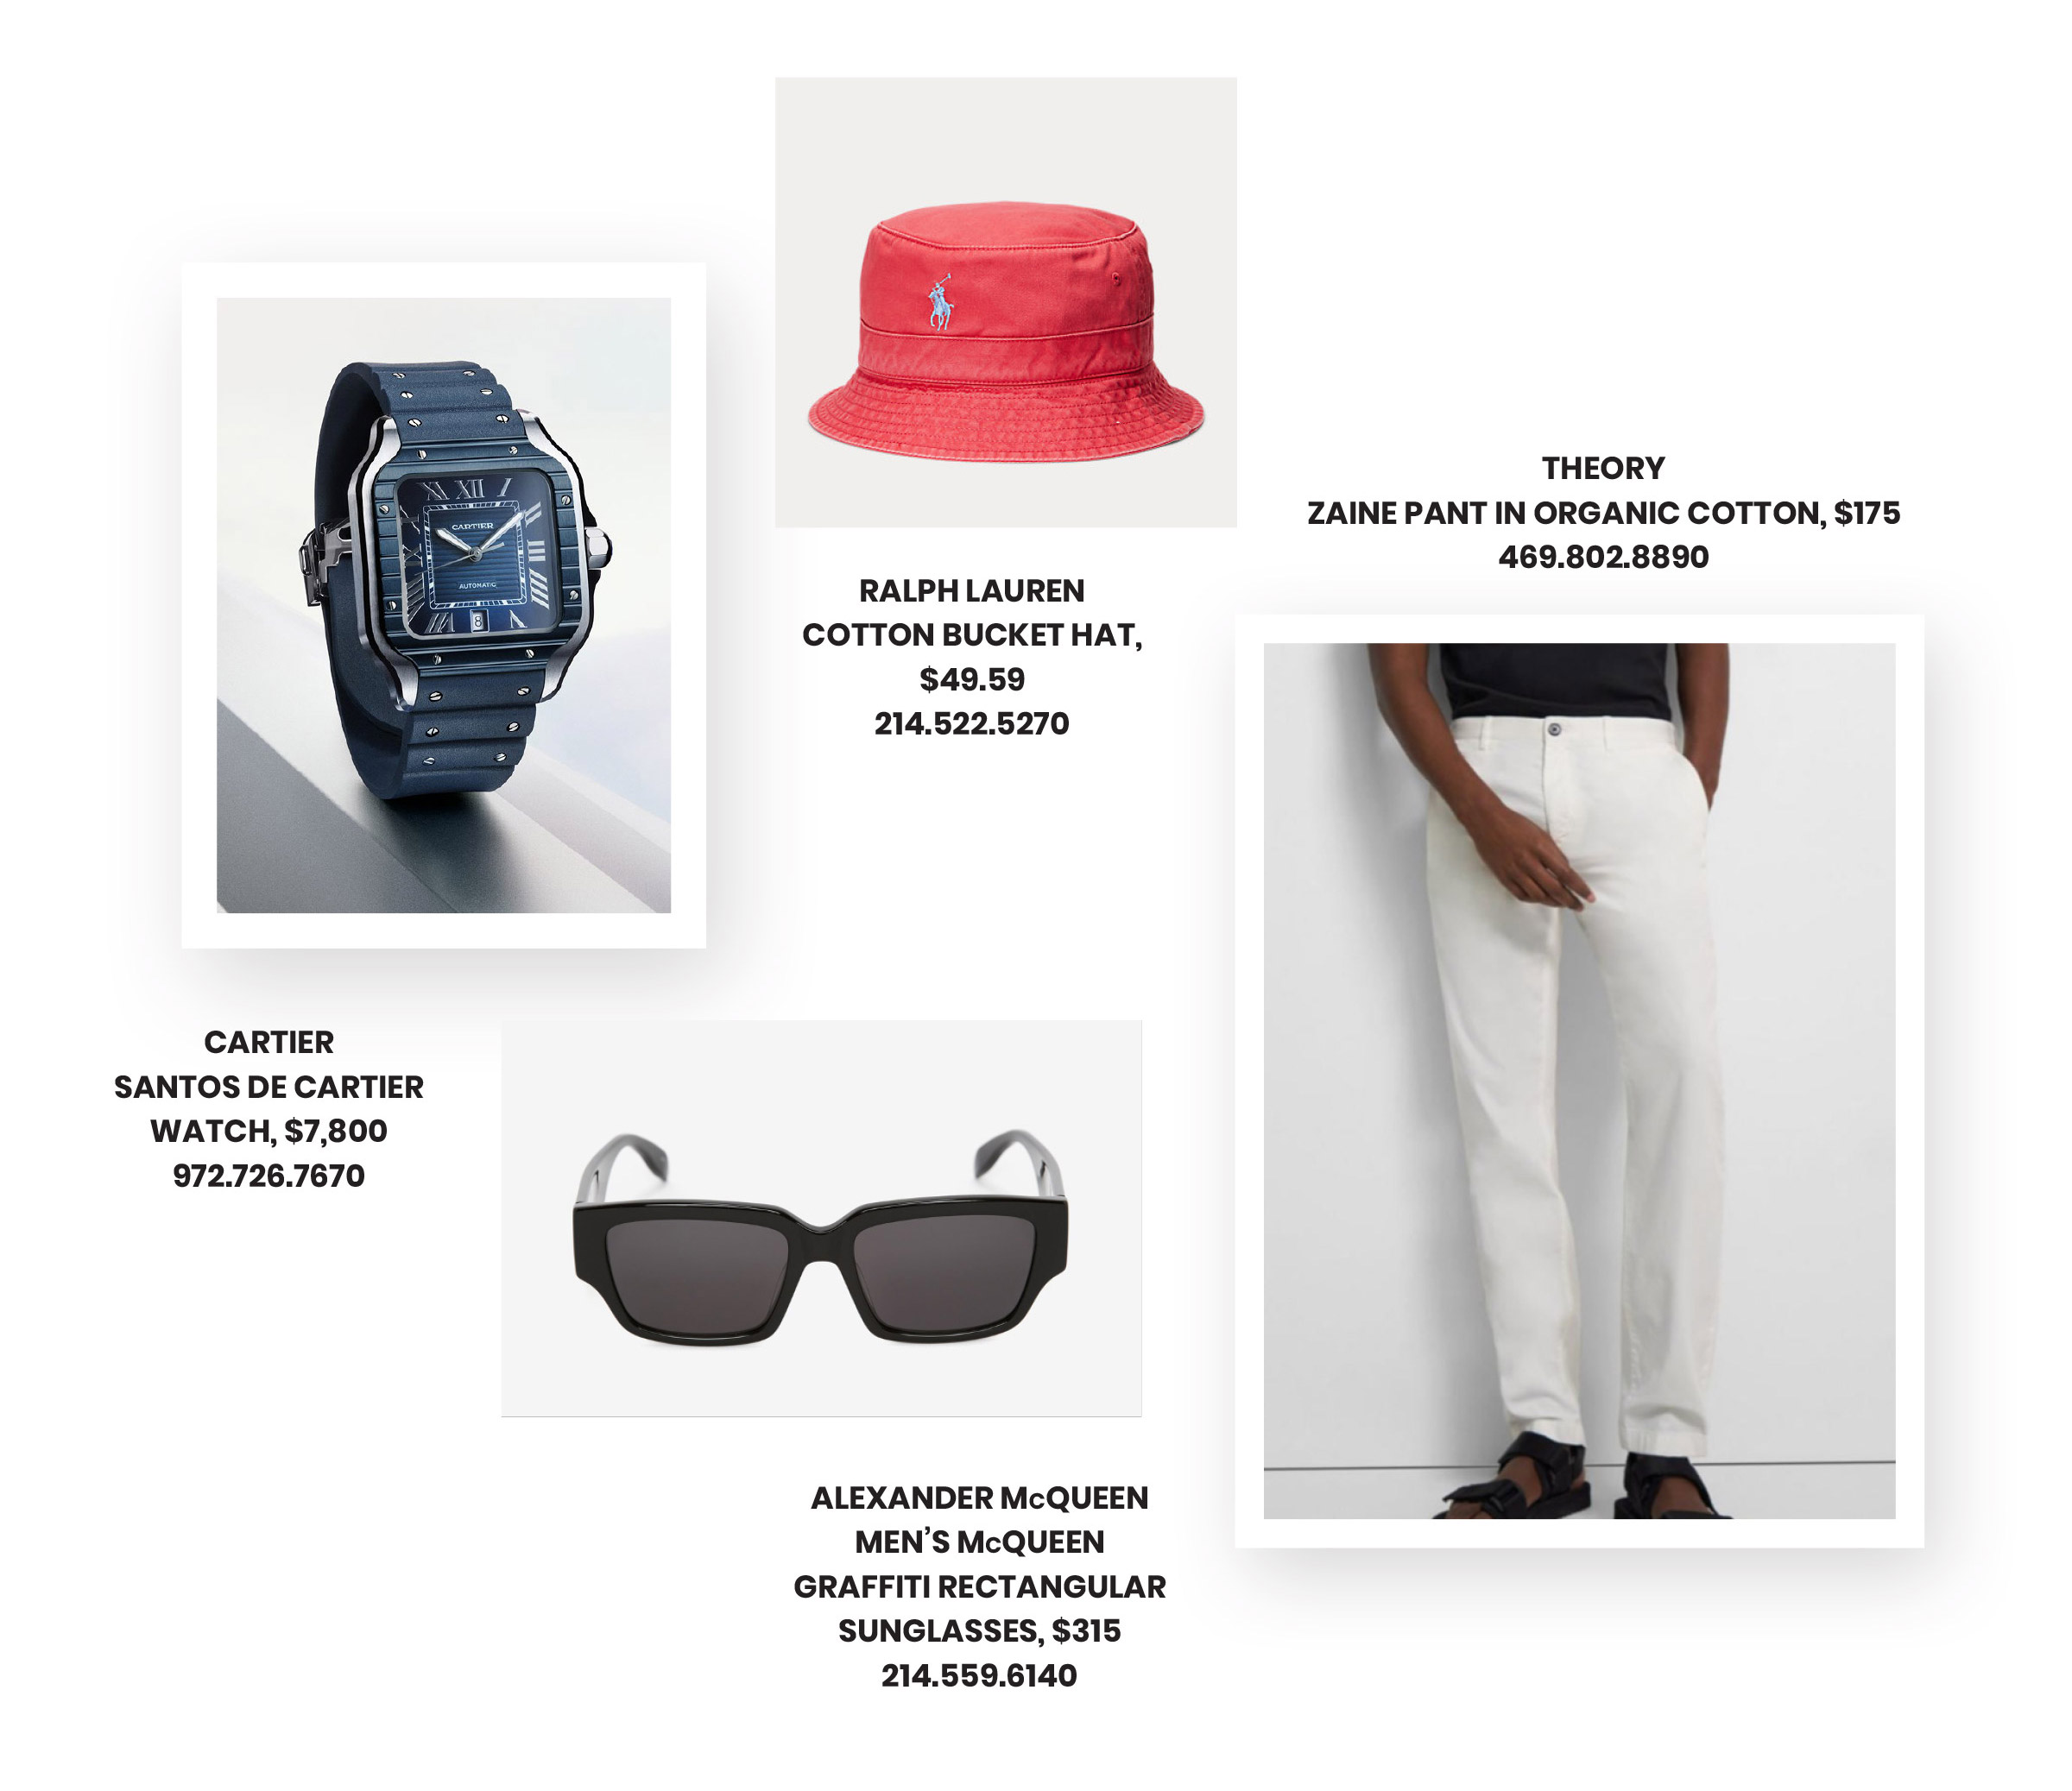 Regalos del Día del Padre con reloj Cartier, sombrero de pescador Ralph Lauren y pantalones Theory Zaine